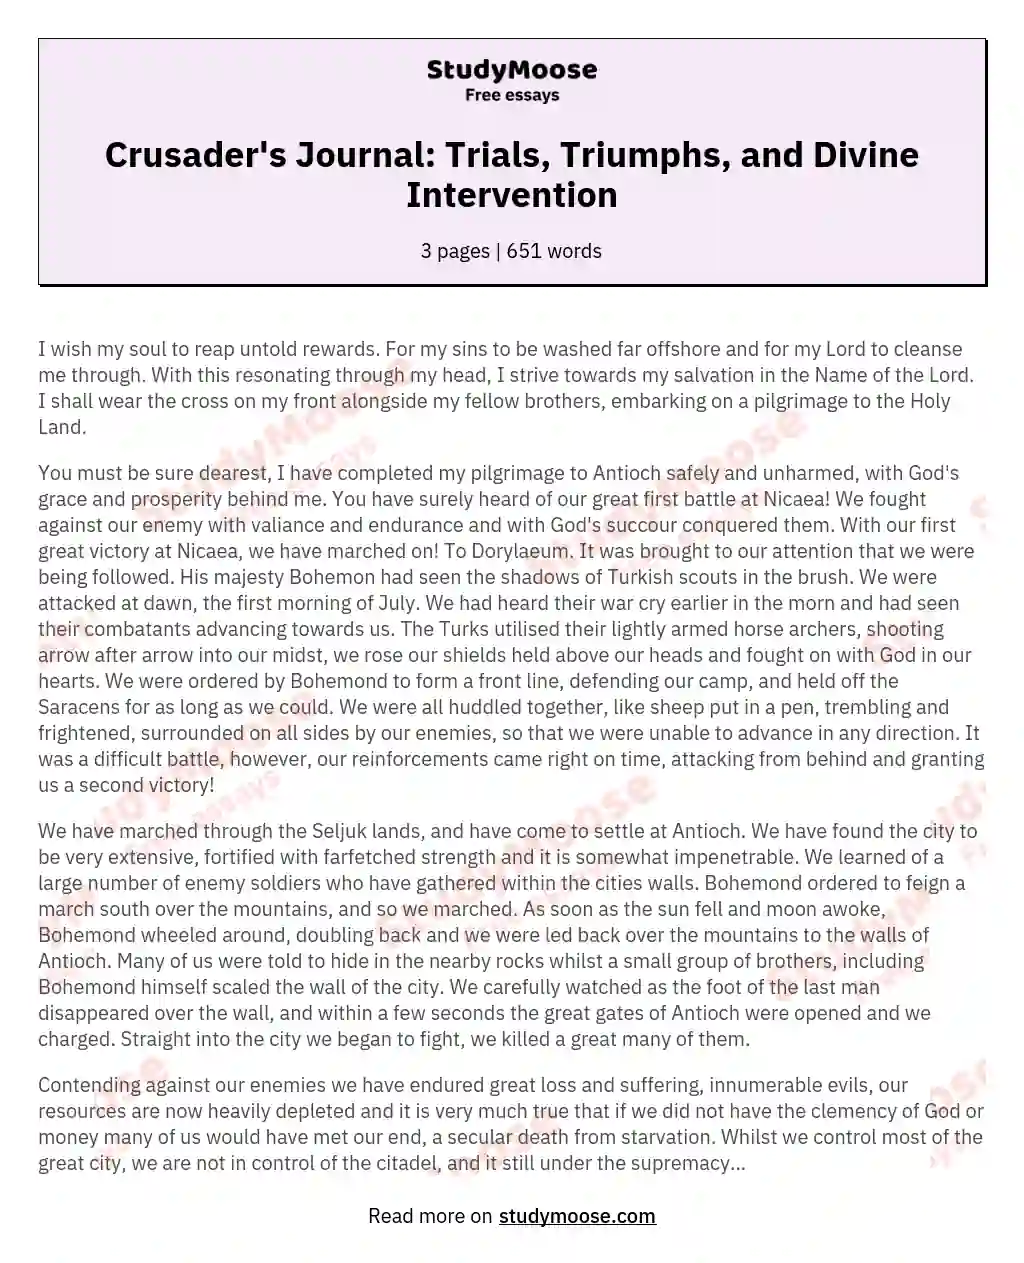 Crusader's Journal: Trials, Triumphs, and Divine Intervention essay